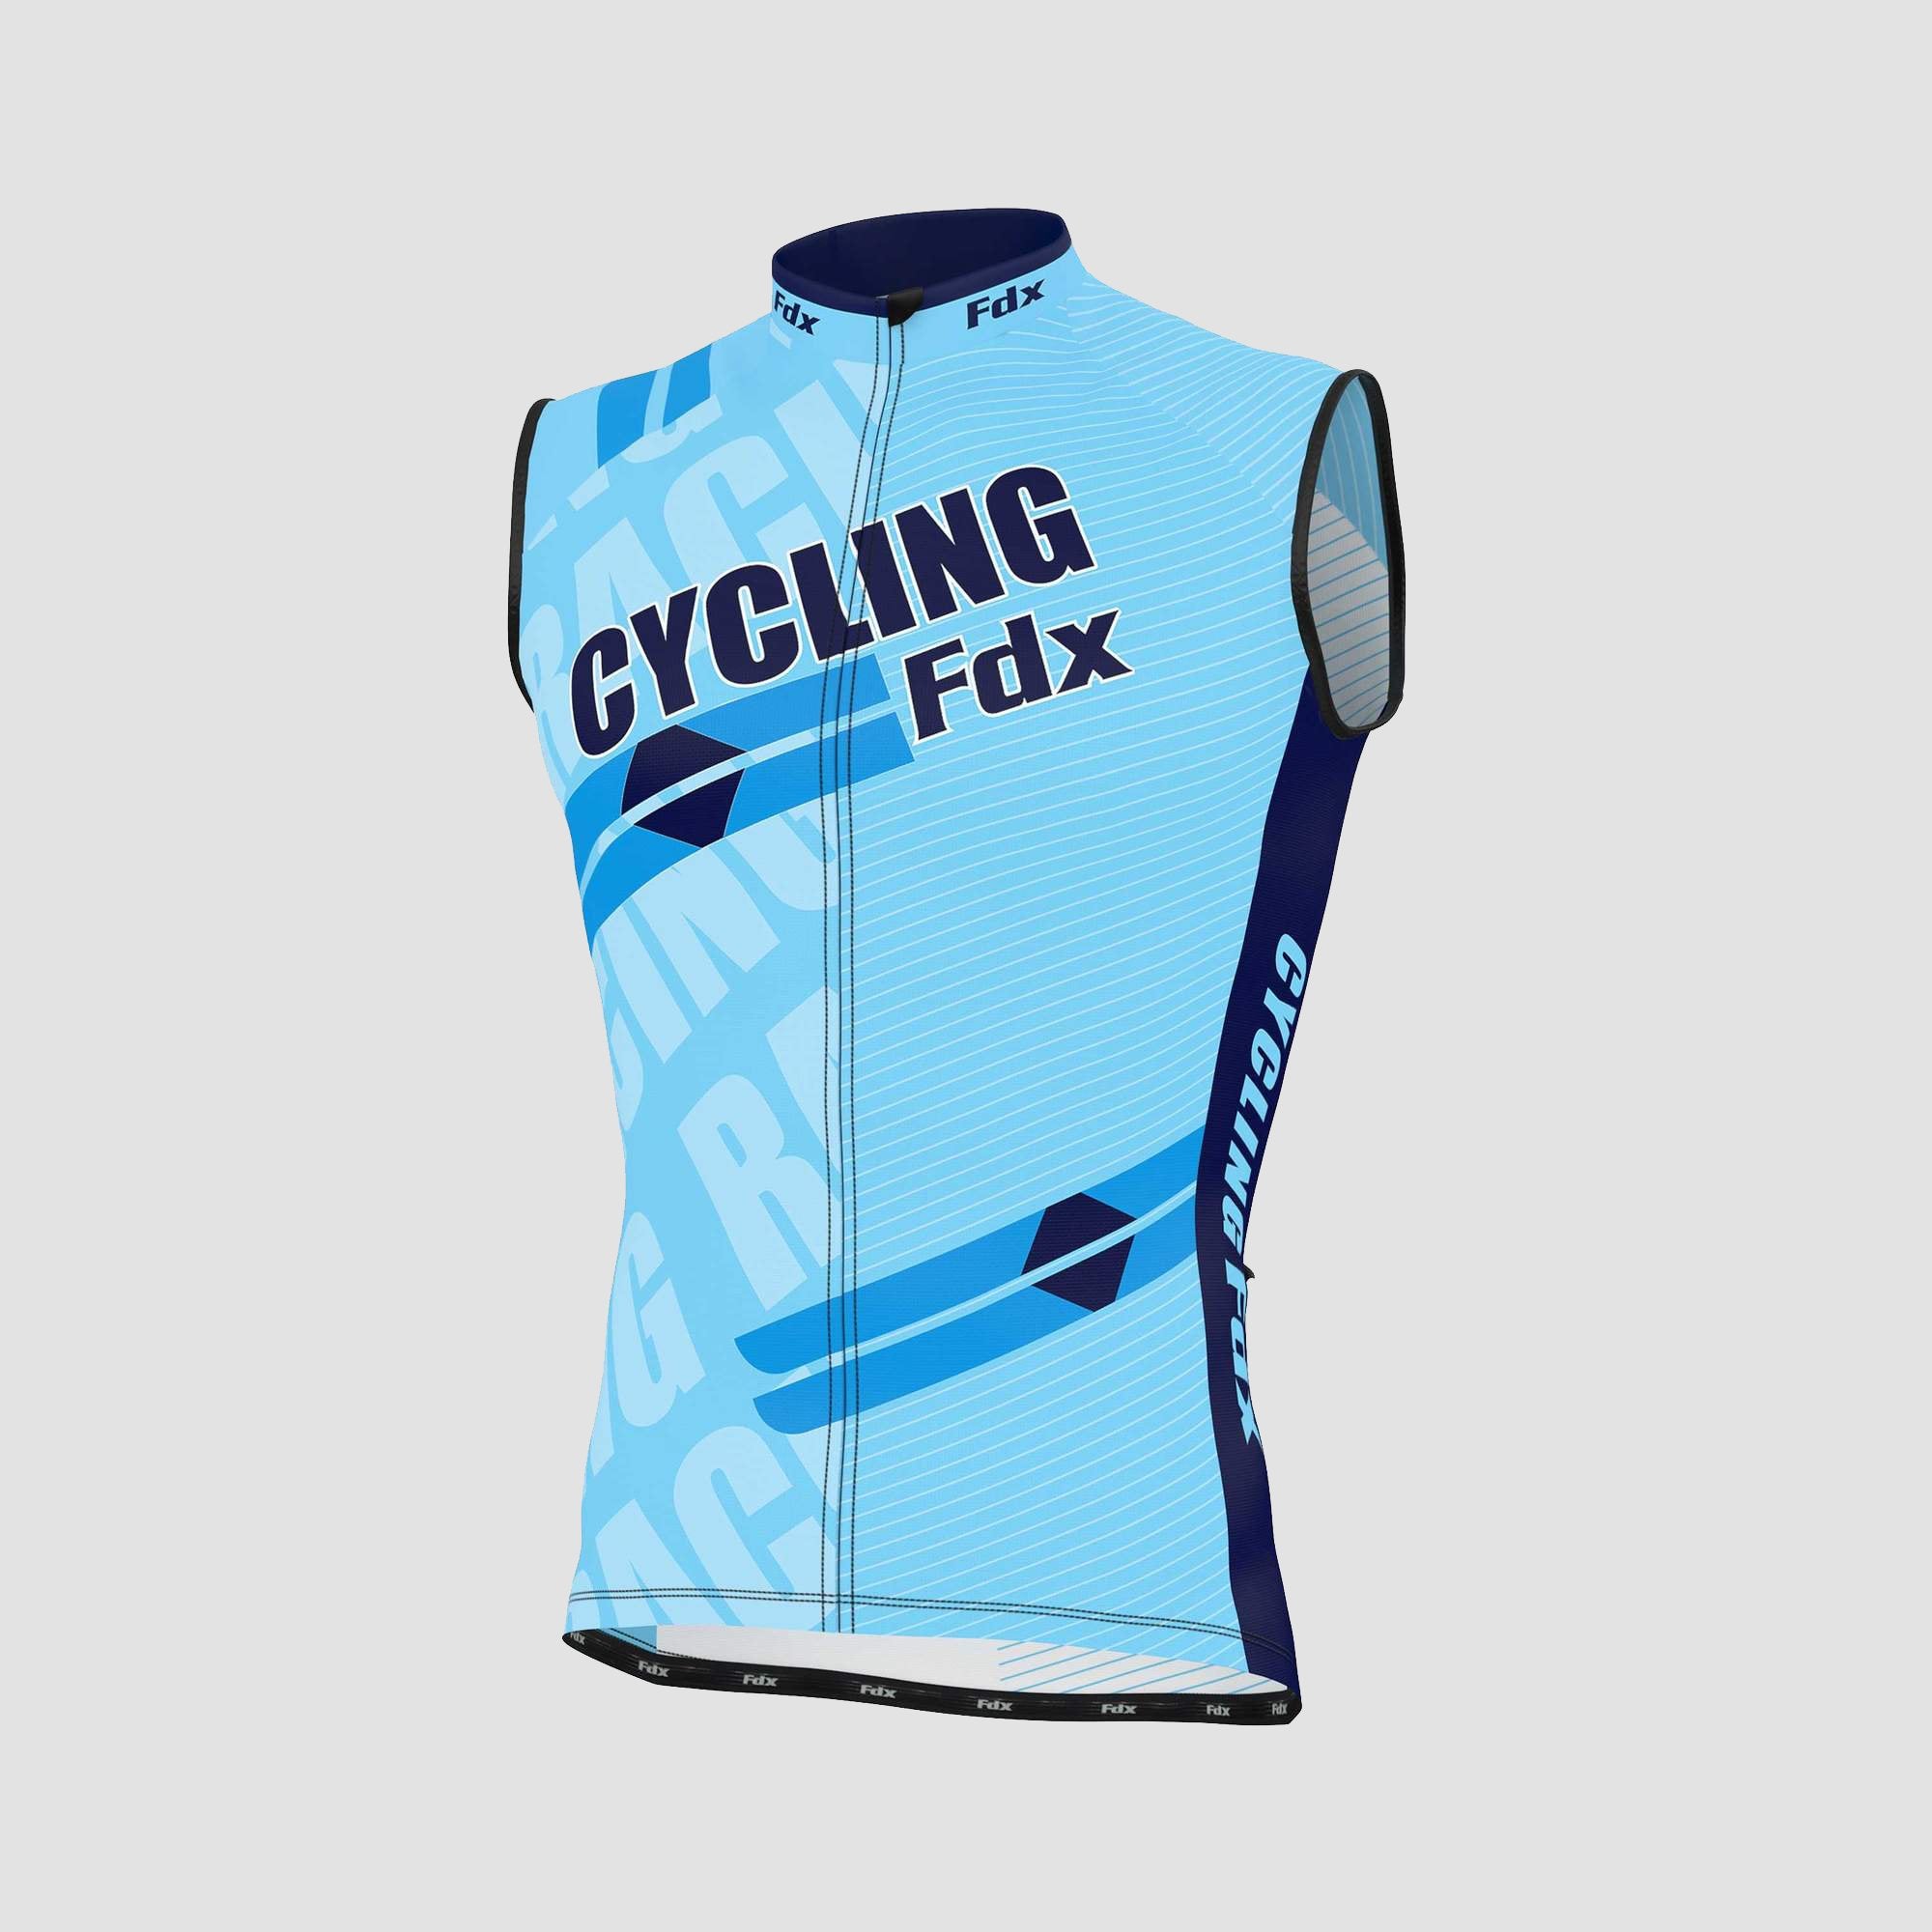 Fdx Mens Sky Blue Sleeveless Cycling Jersey for Summer Best Road Bike Wear Top Light Weight, Full Zipper, Pockets & Hi-viz Reflectors - Core